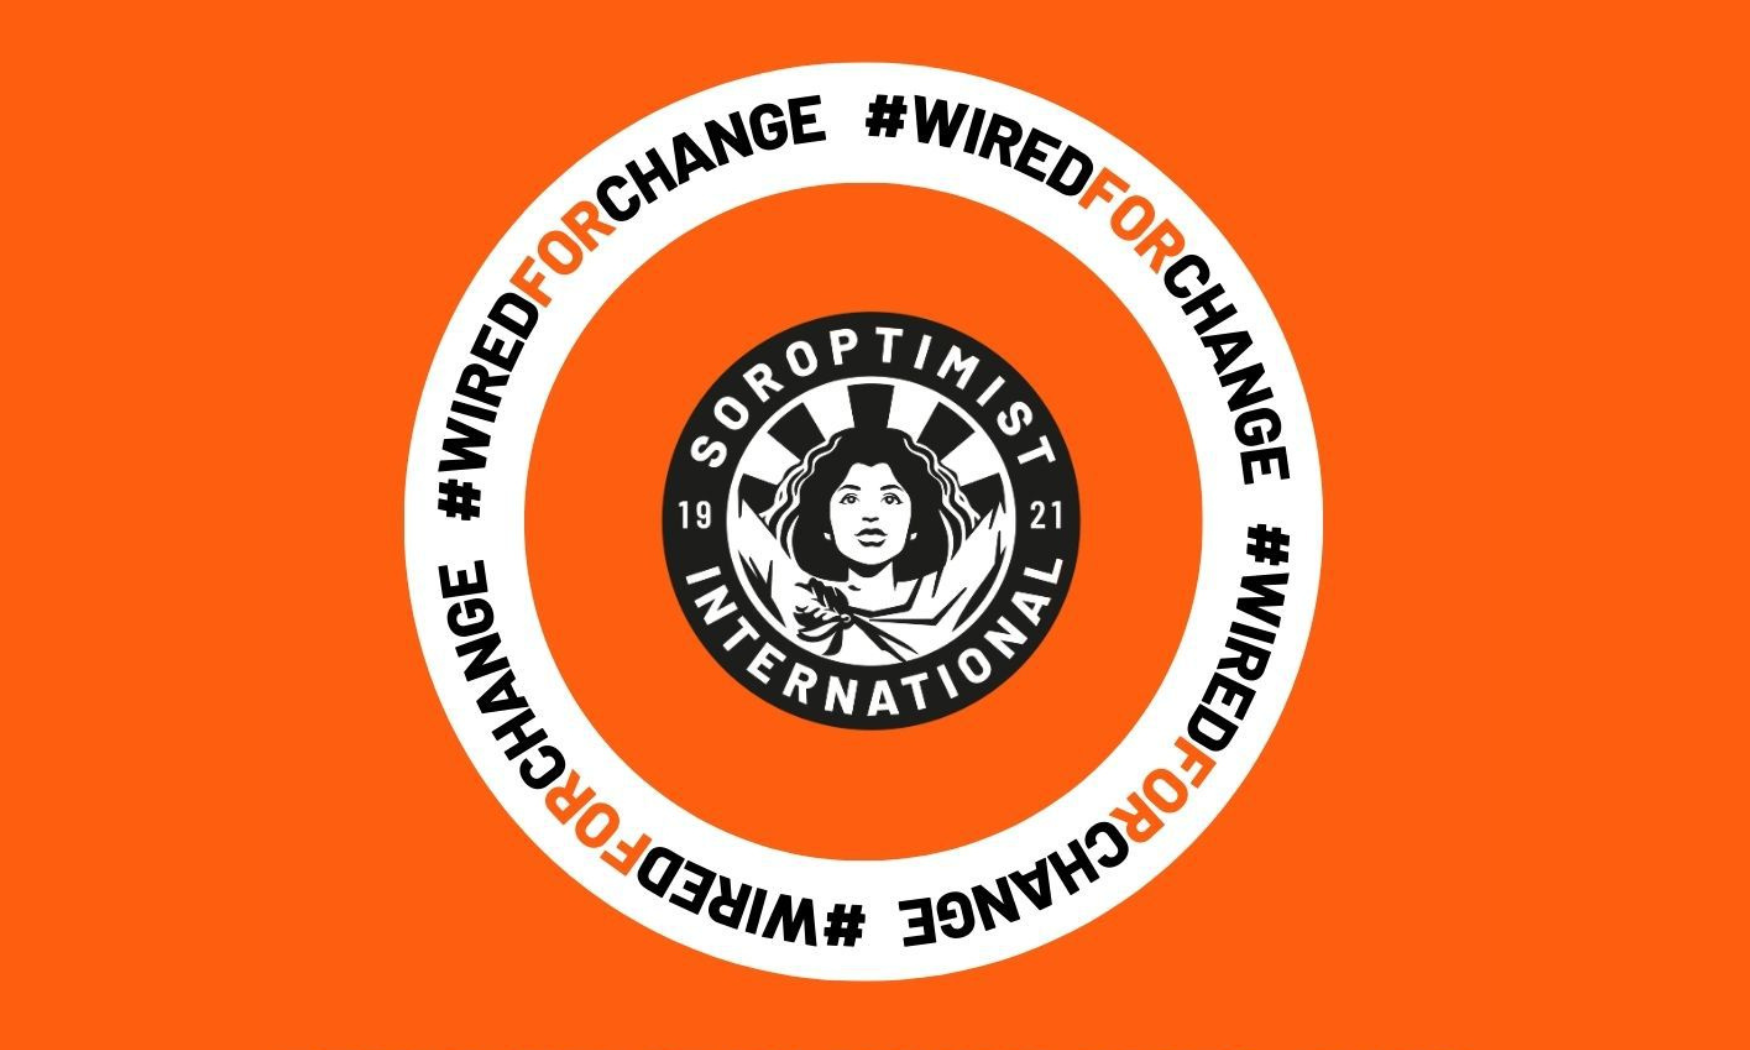 Fique "Wired for Change": Participe dos 16 dias de ativismo